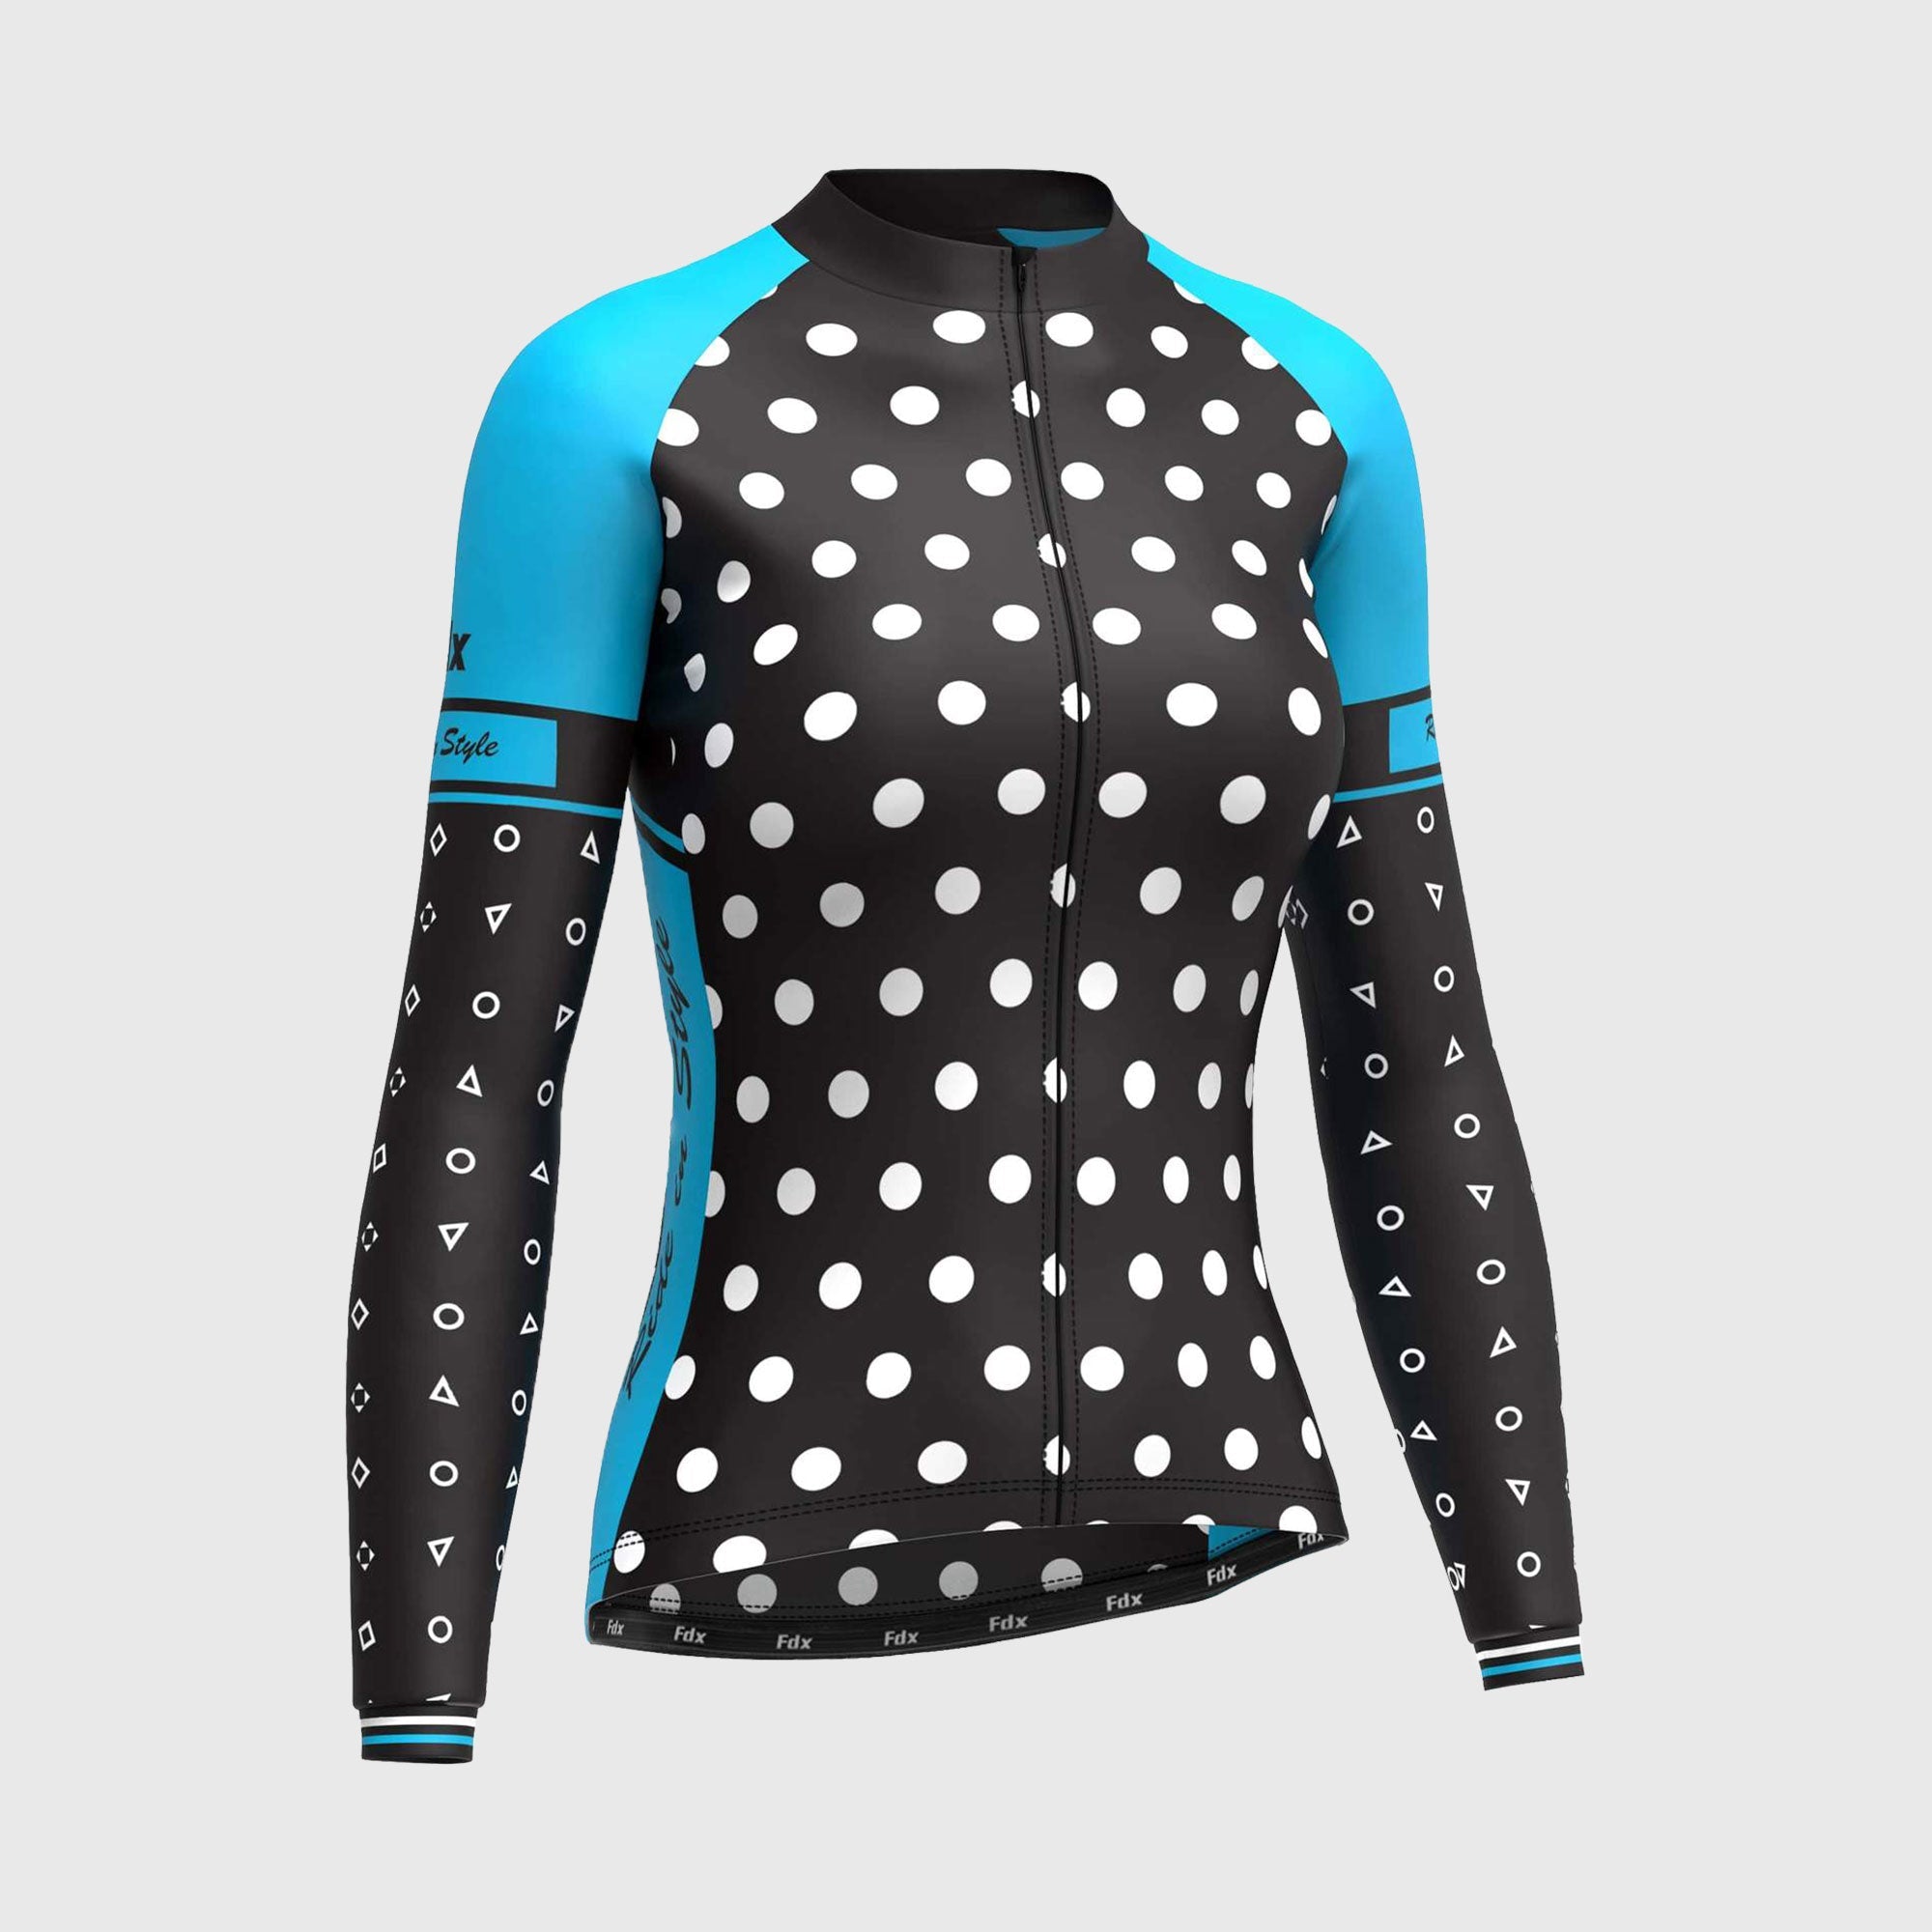 Fdx Polka Dots Sky Blue Women's Long Sleeve Winter Cycling Jersey